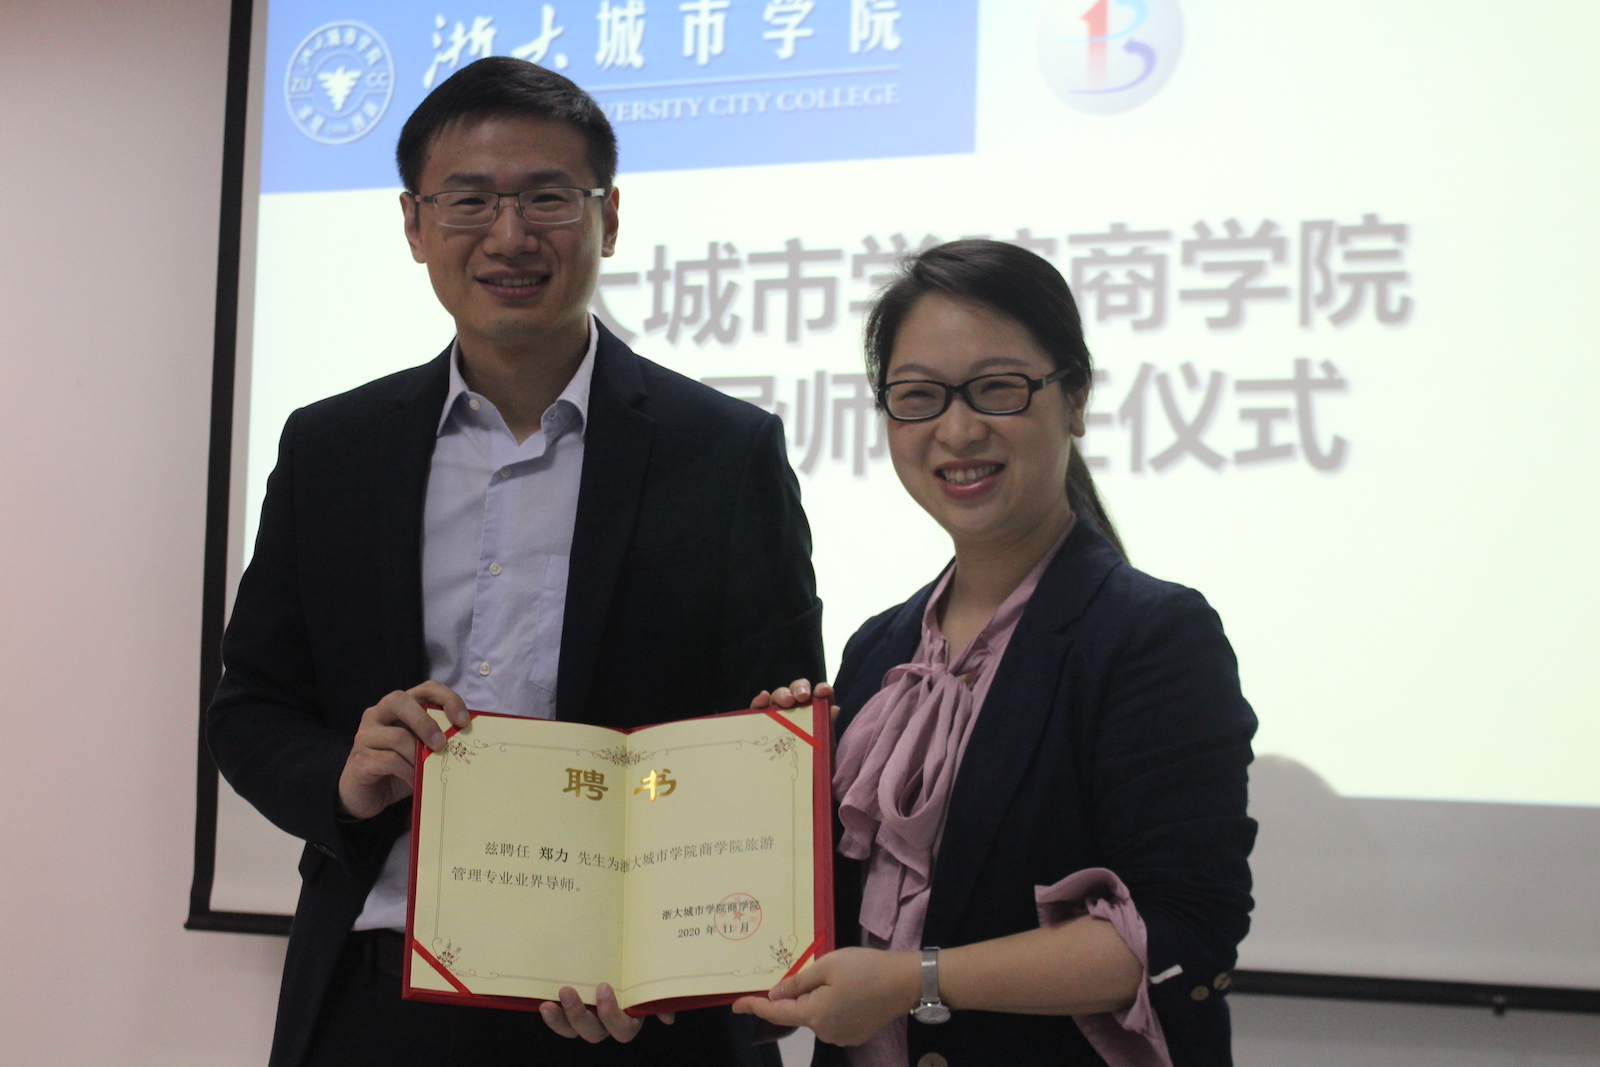 郑小塔受聘为浙江大学城市学院业界导师1.JPG